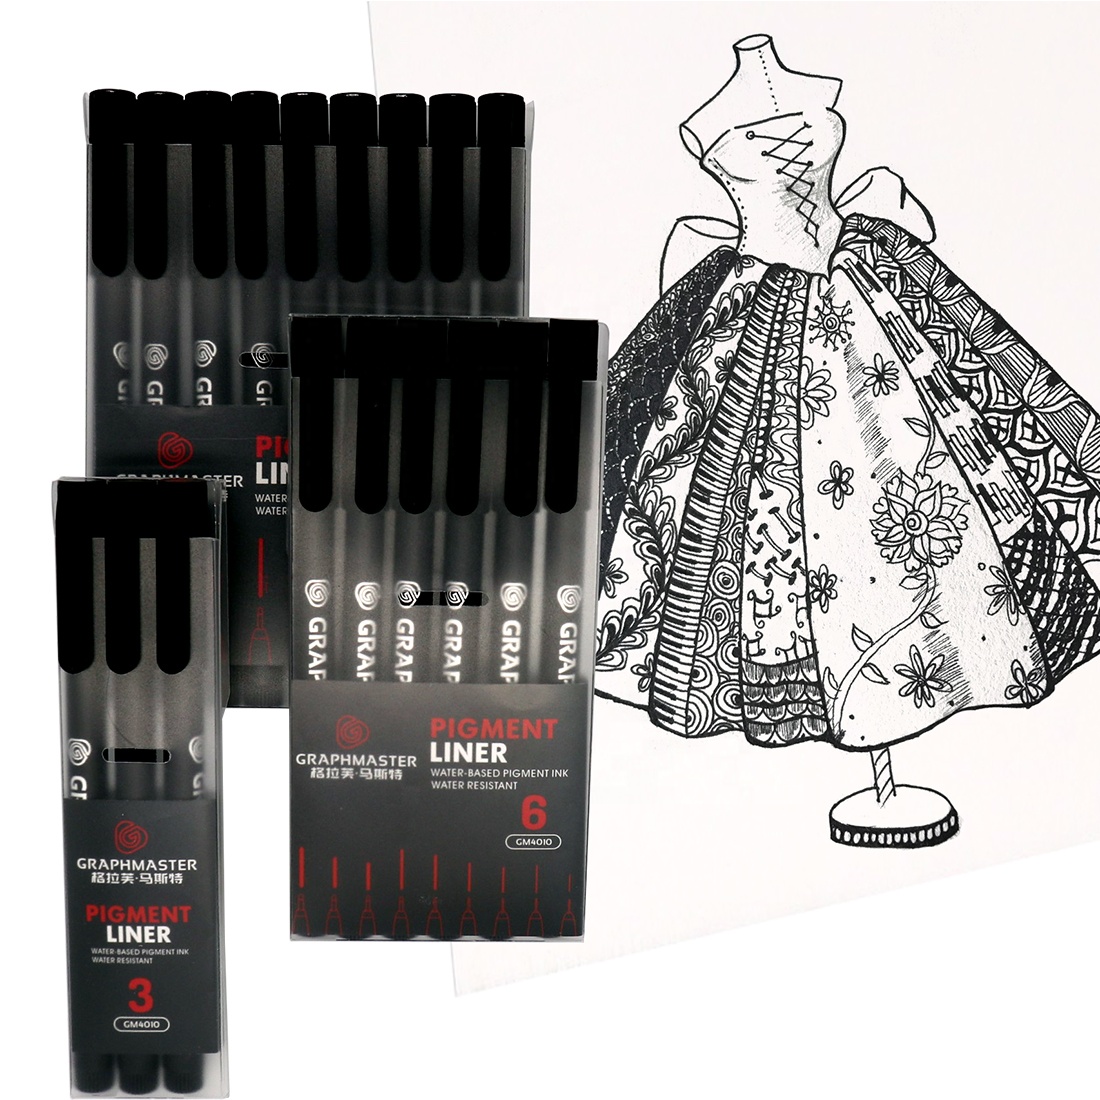 9 dimensioni Black Fineliner Pigment Liner Liner Pen Micro Ago Schizzo Waterproof Drawing Pen Art School Supplies1